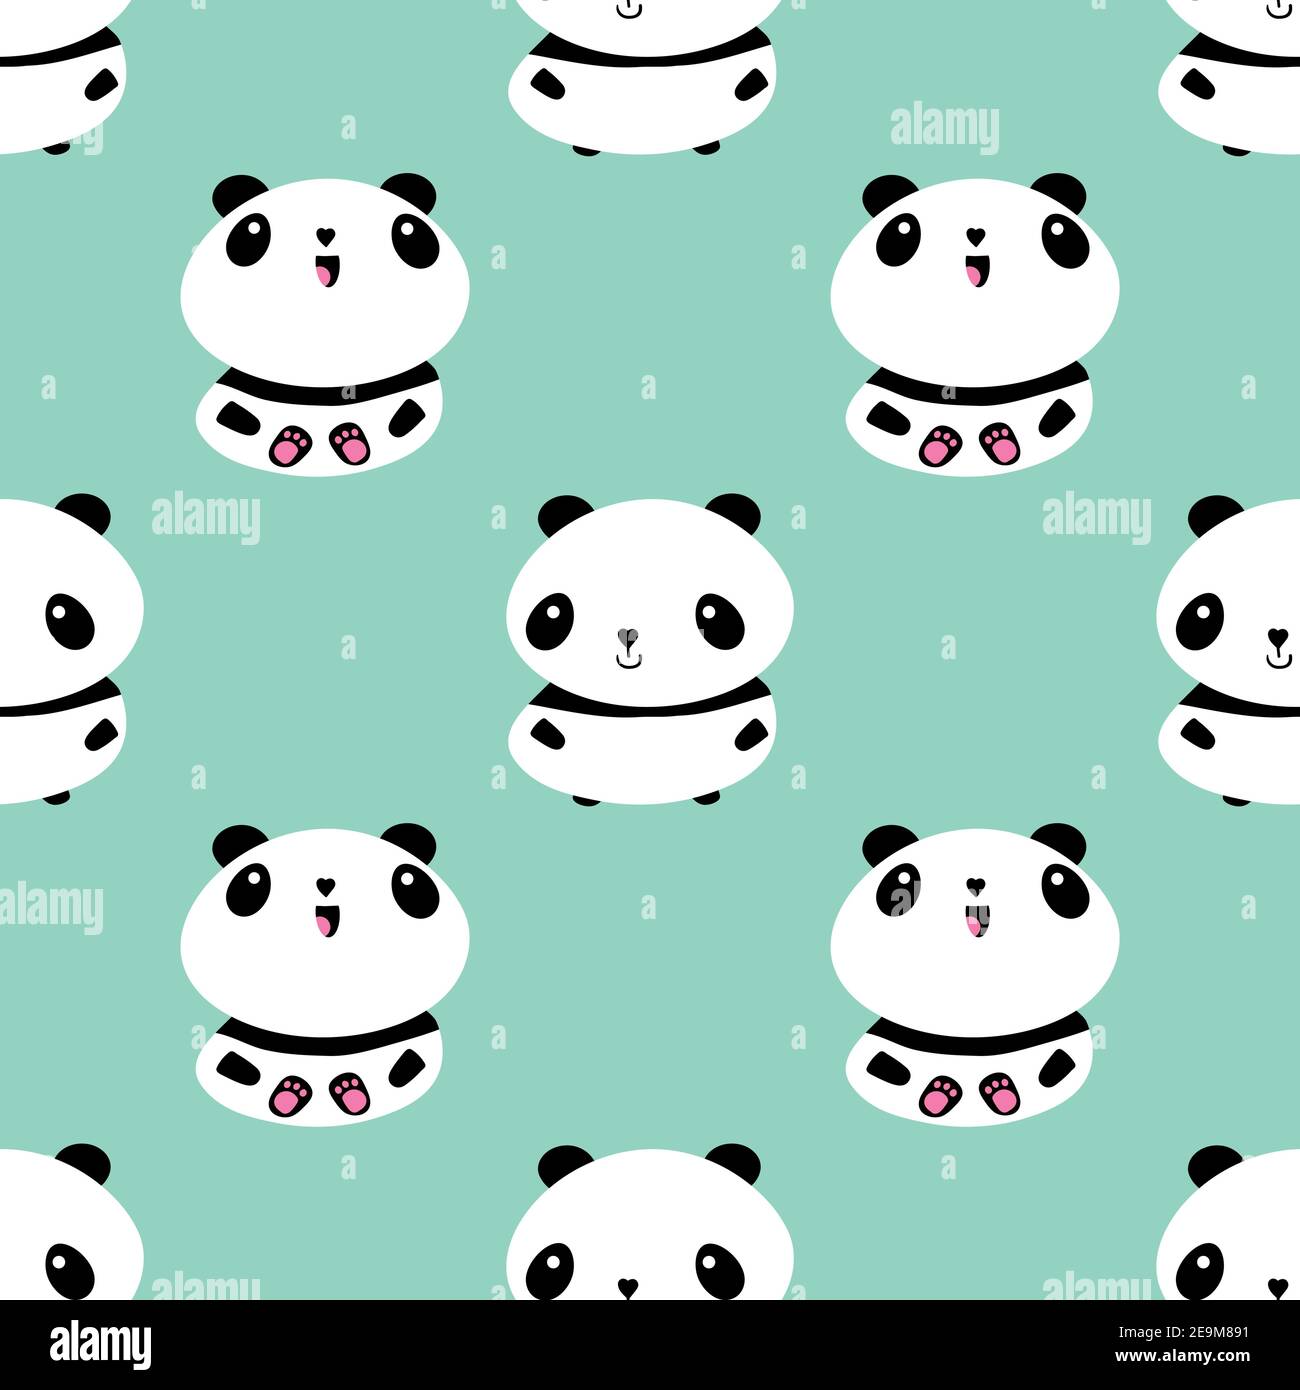 Live wallpaper Panda and soap bubbles DOWNLOAD